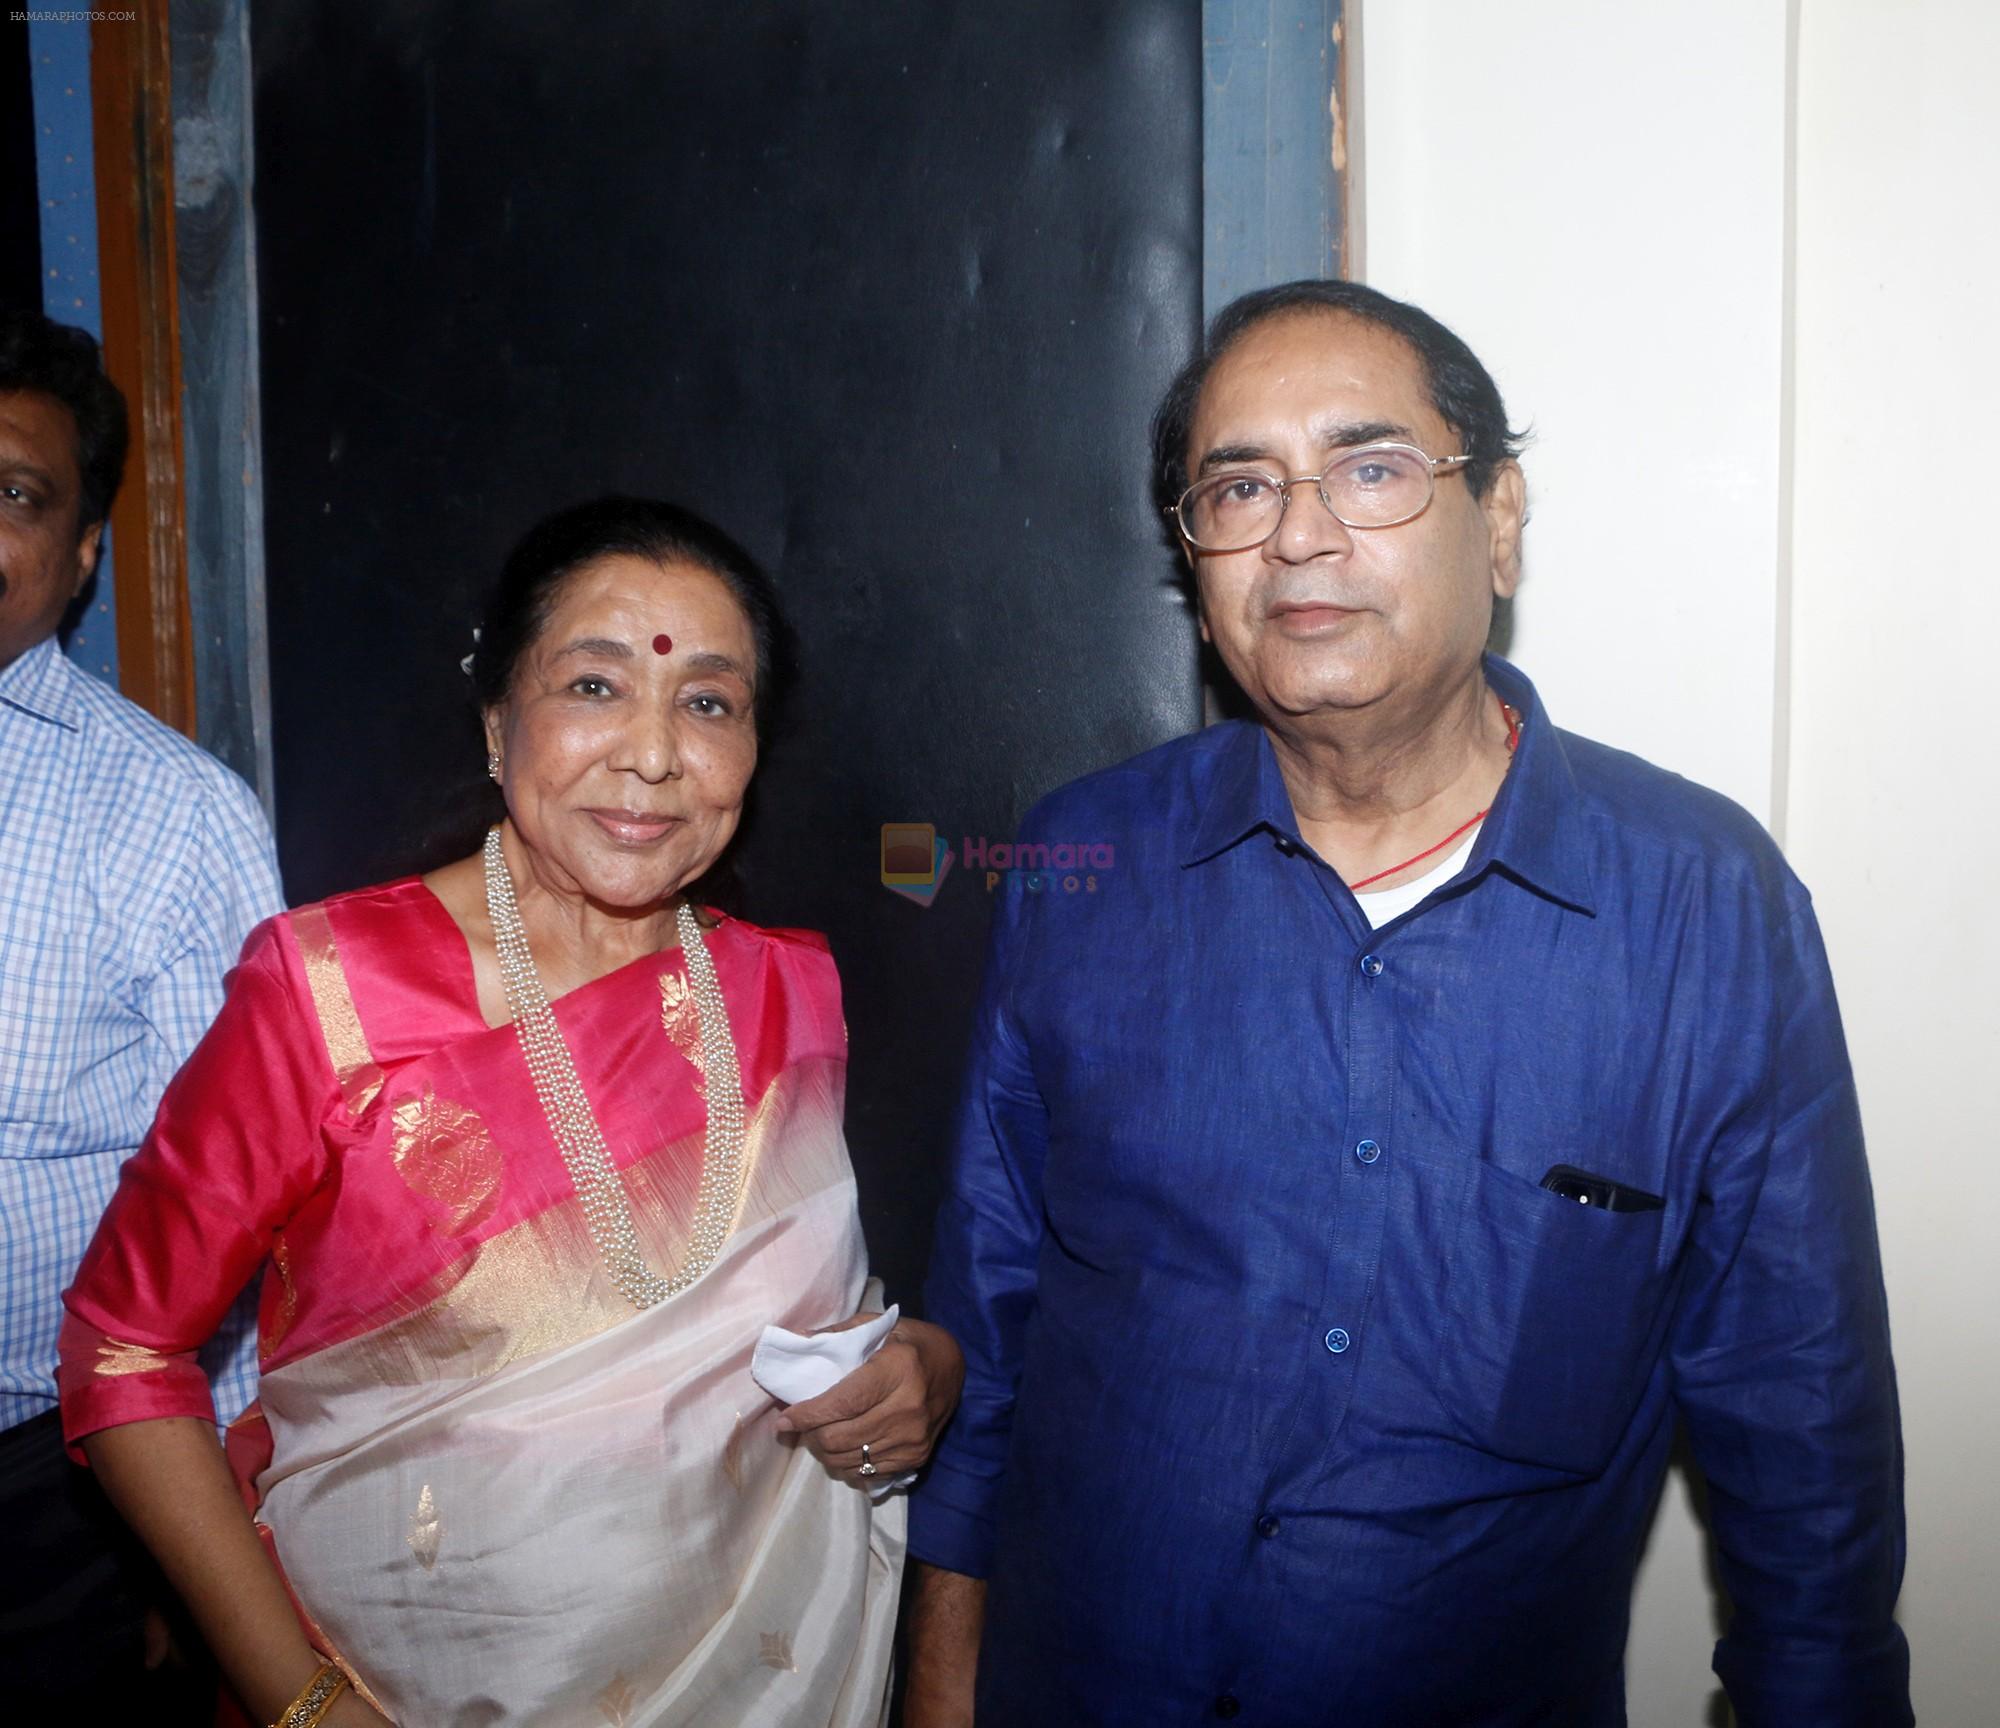 Asha Bhosle and Avinash Prabhavalkar of Hridayesh Arts at the release of Mothi Tichi Savli, a book on Lata Mangeshkar, penned by Meena Mangeshkar-Khadikar